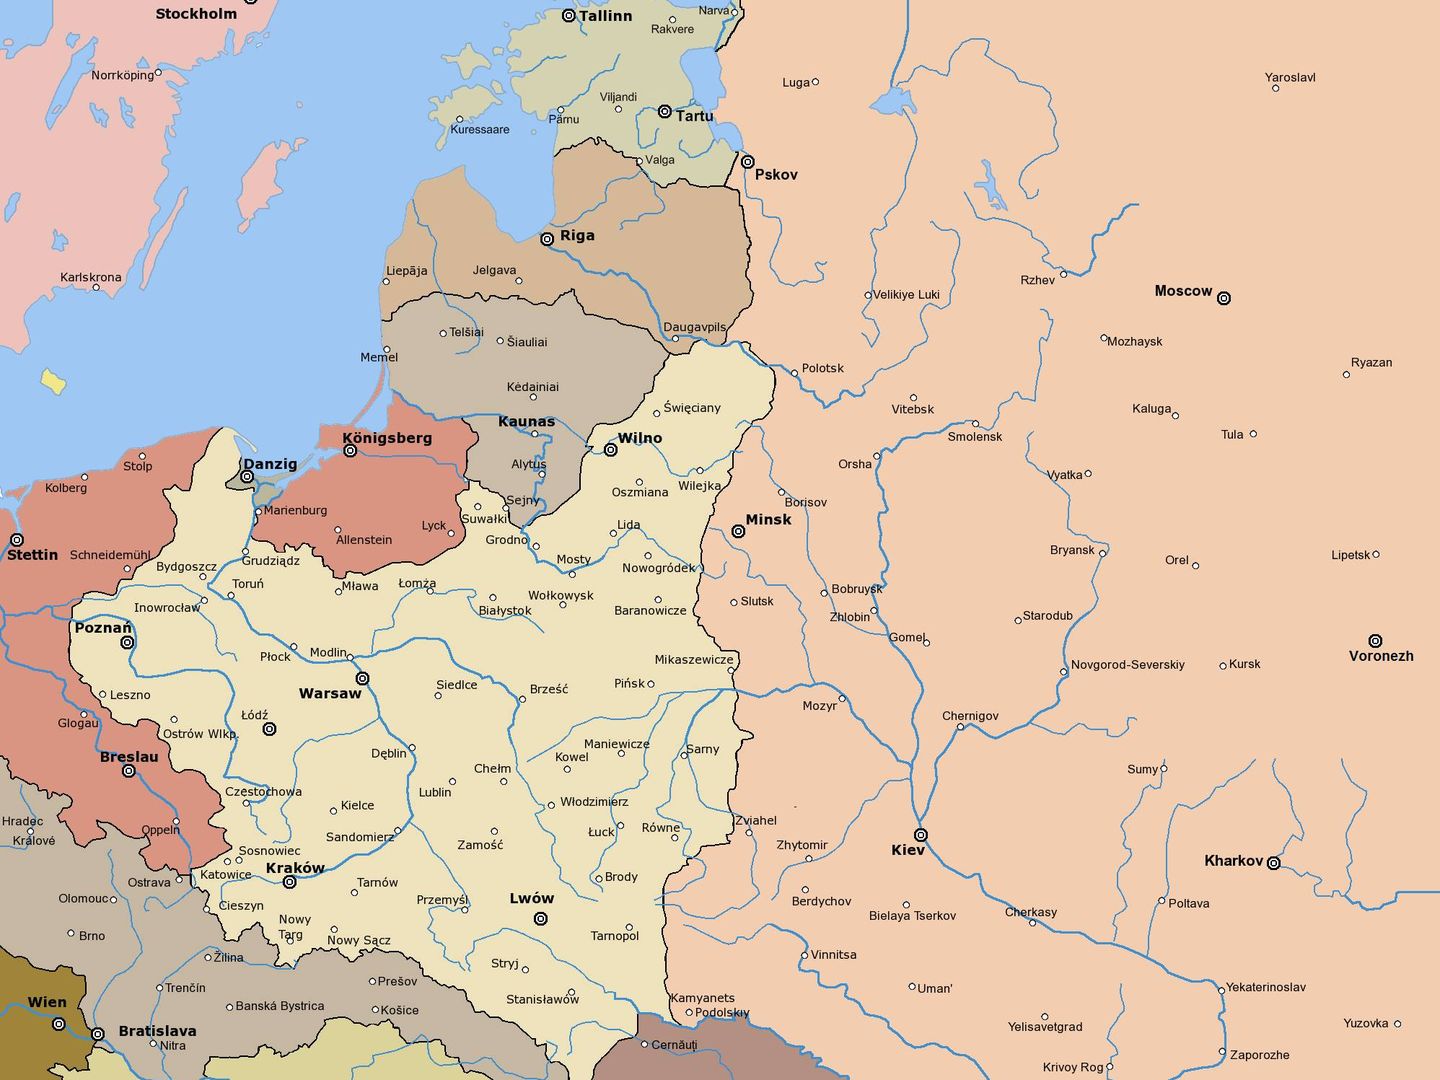 Mapa con las fronteras del tratado de Riga de 1921-22.